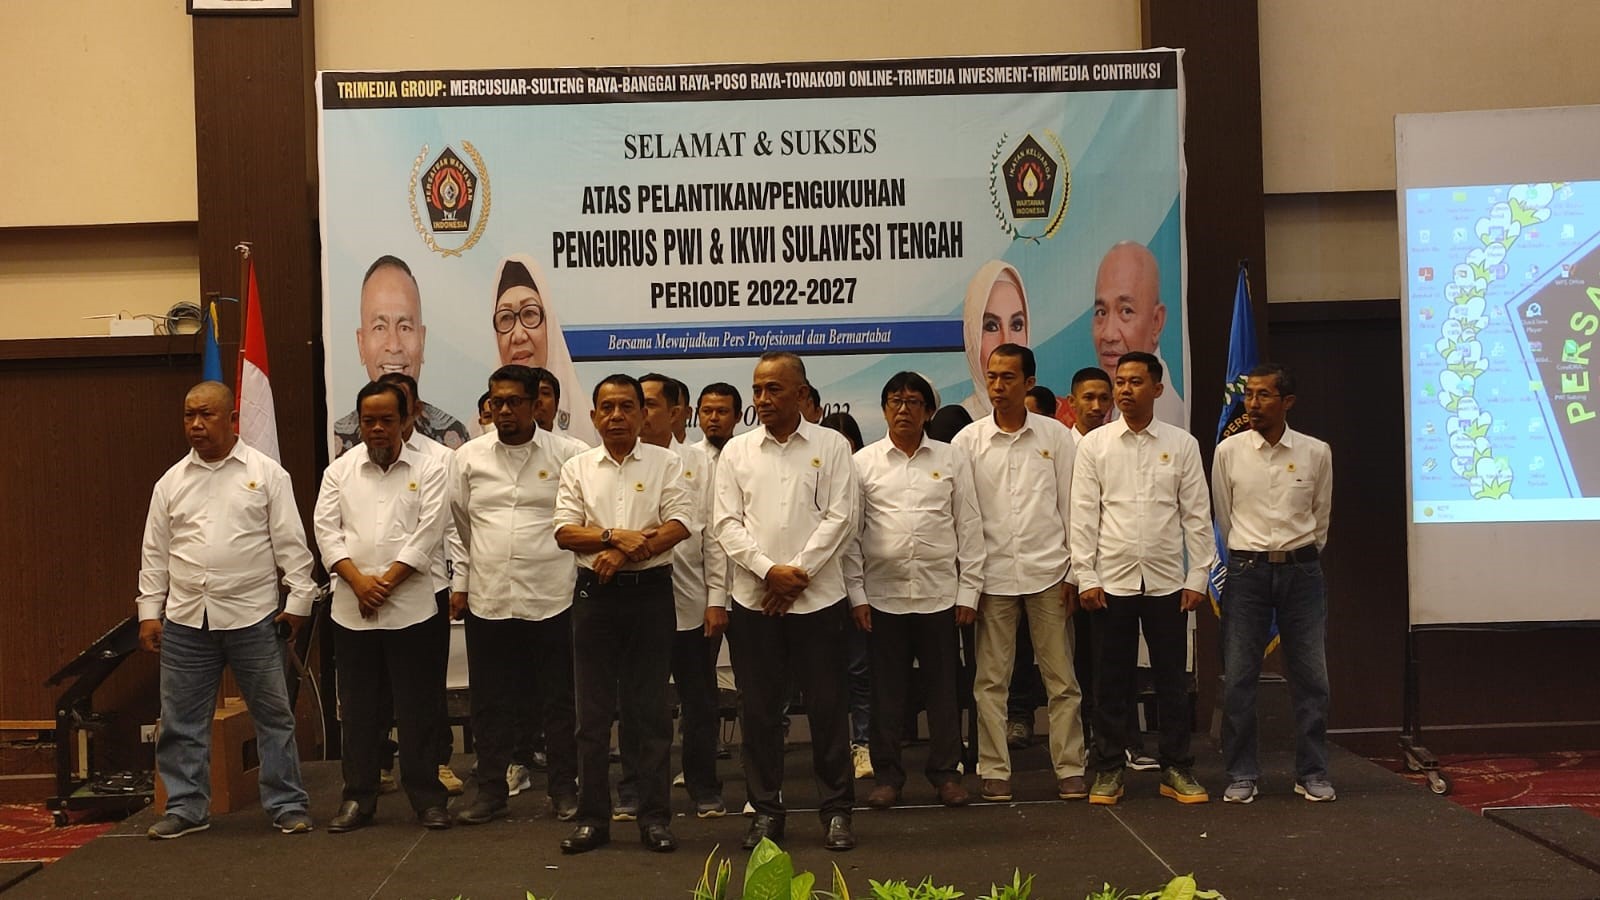 foto: Pelantikan/pengukuhan pengurus PWI & IKWI Sulteng periode 2022-2027